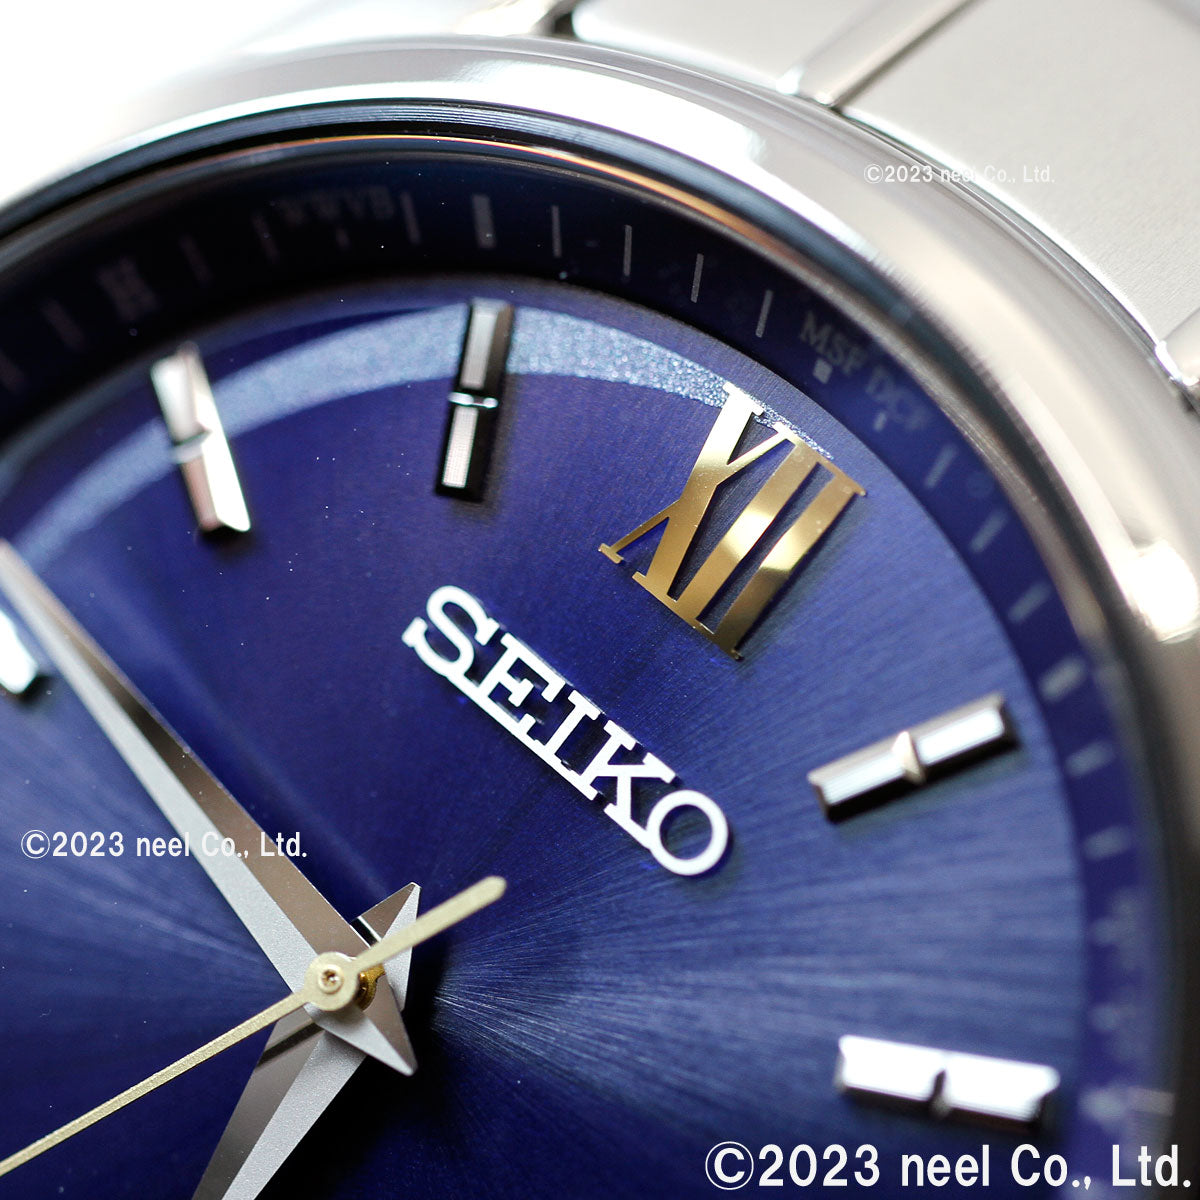 セイコー セレクション SEIKO SELECTION 電波 ソーラー 電波時計 エターナルブルー 限定モデル 腕時計 メンズ SBTM345 ダイヤ入りダイヤル ネイビー